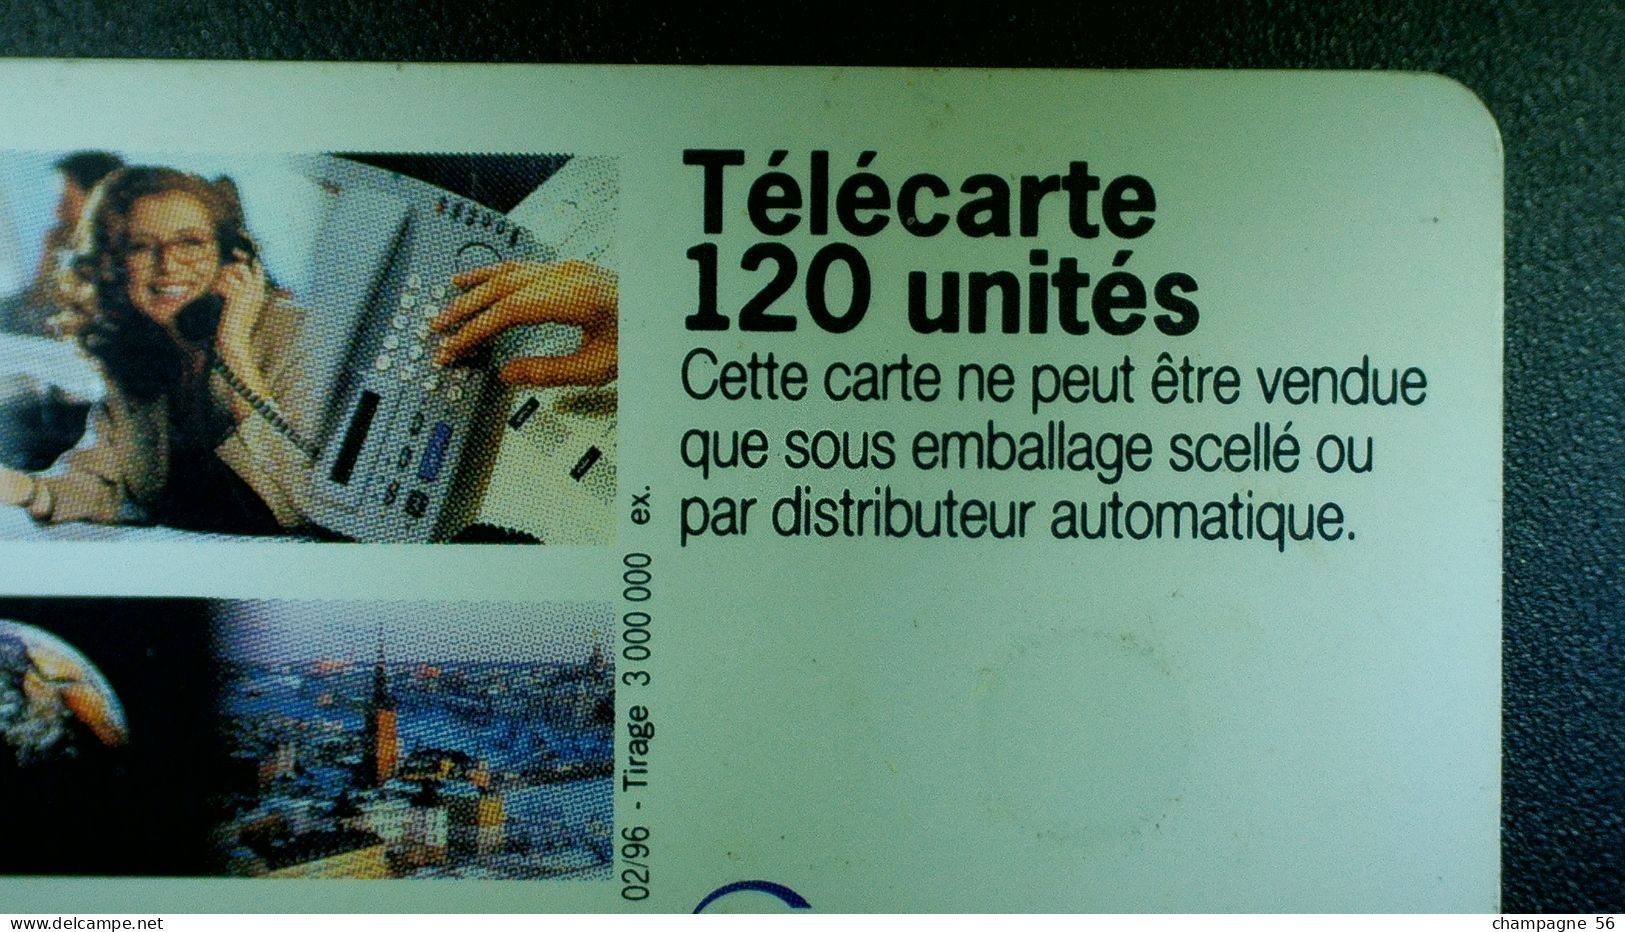 FRANCE   1996  02 / 1996 FRANCE TELECOM PLUS PROCHE  F618A 980 PUCE SC7   120 UNITÉS UTILISÉE